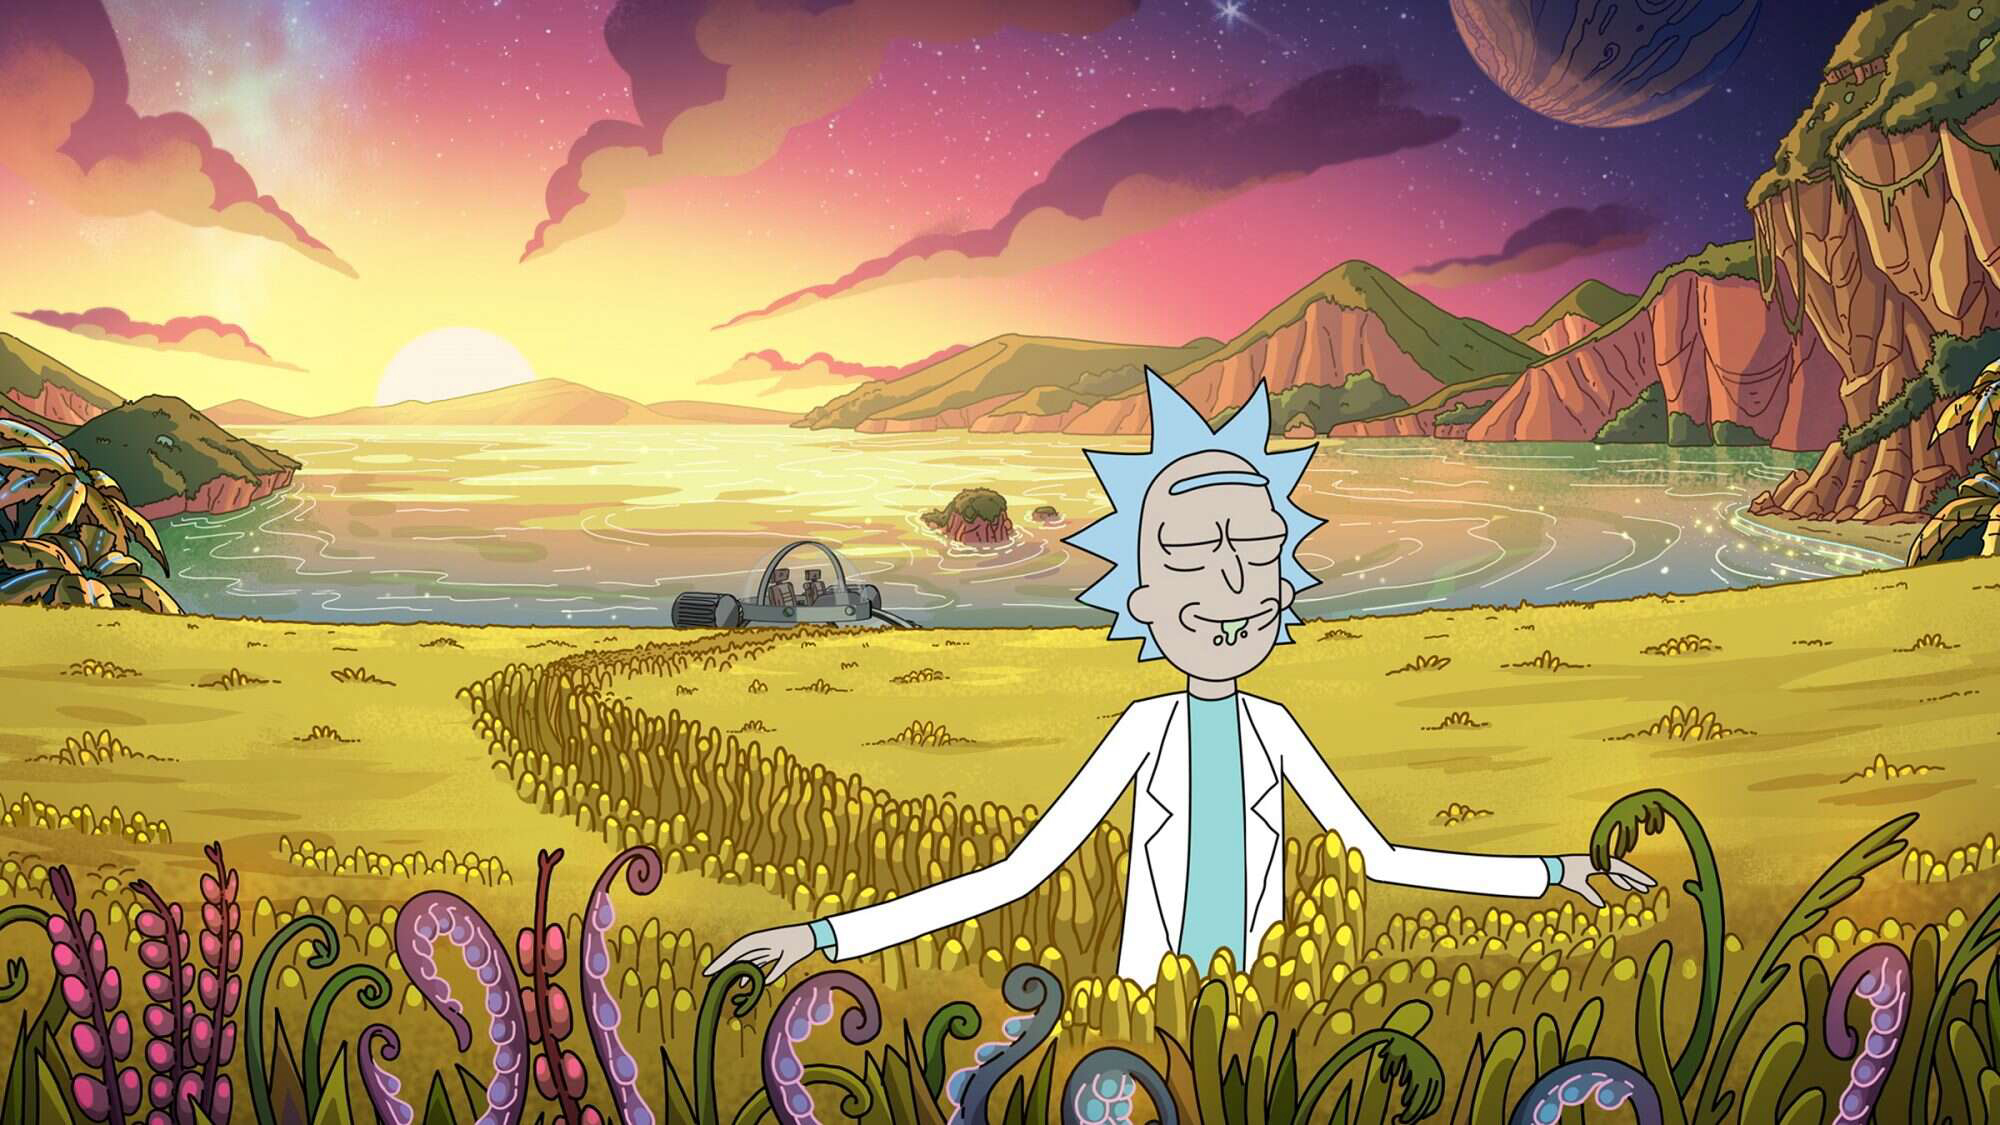 Rick and Morty (Season 4) / Rick and Morty (Season 4) (2019)